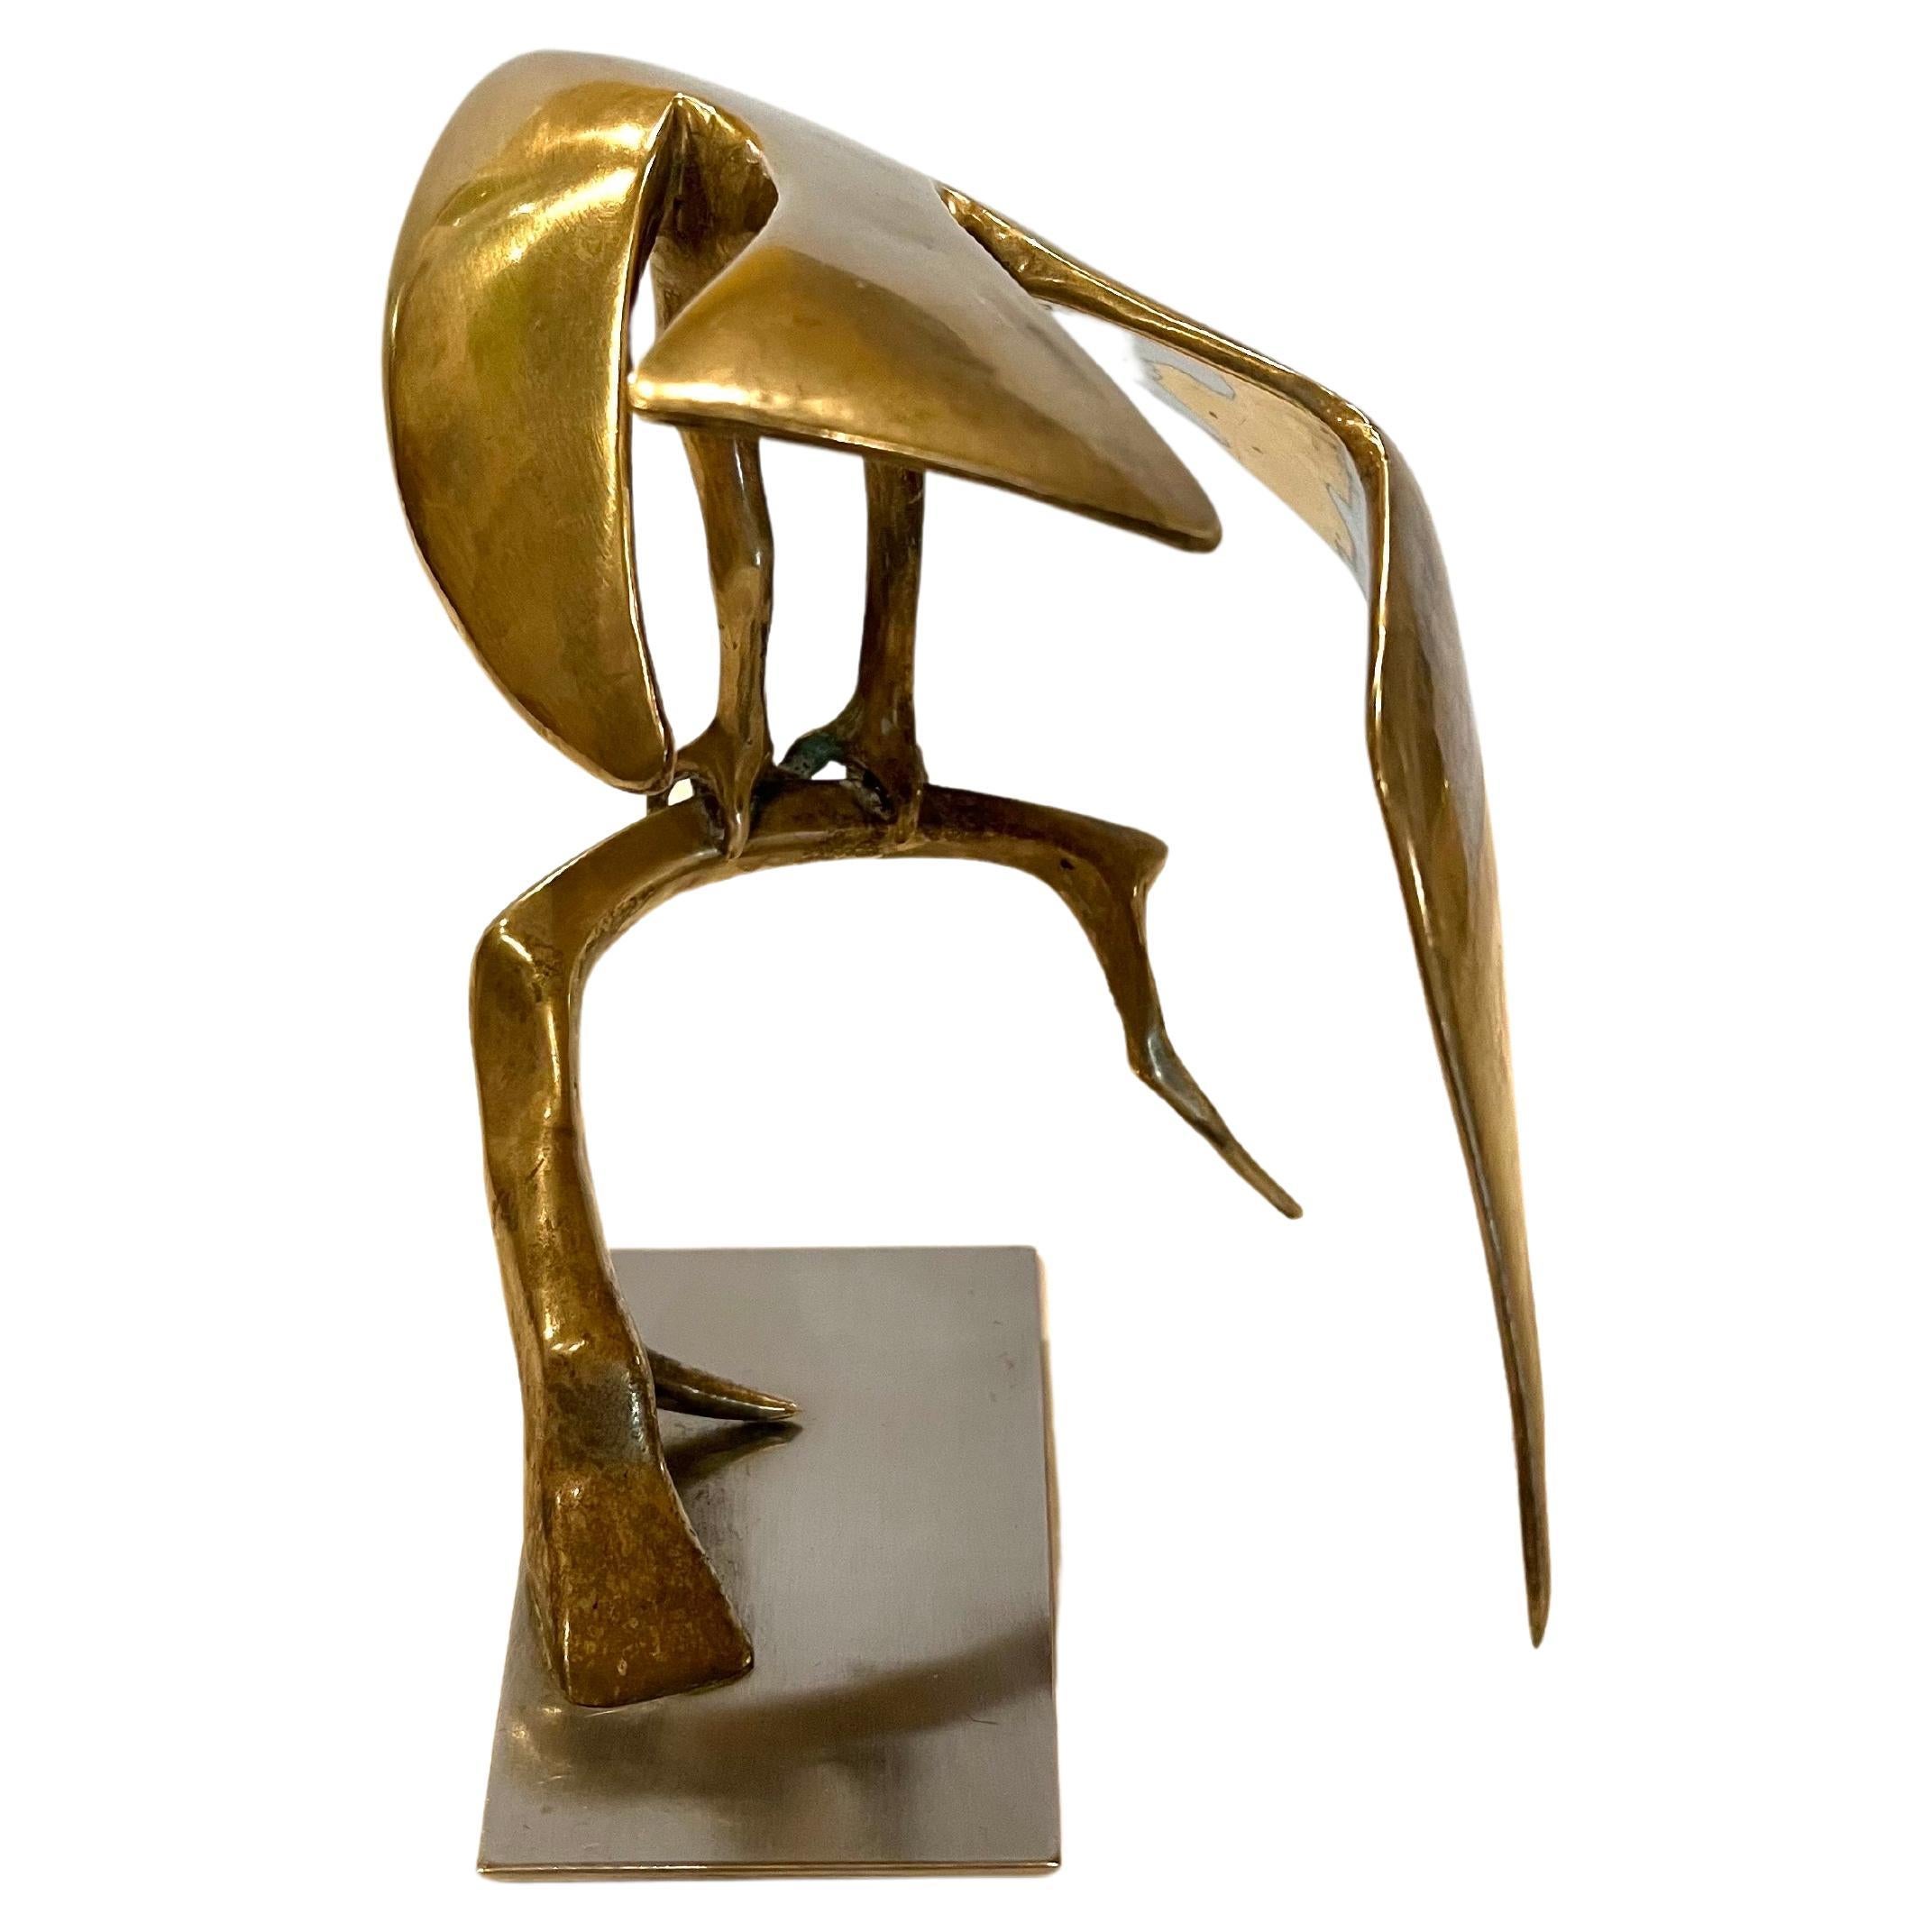 Schöne American Eagle in massiver Bronze, ruht auf einem Zweig sitzt auf einem soliden Sockel aus Edelstahl wunderschönes Stück, unsigned mit großer Qualität.